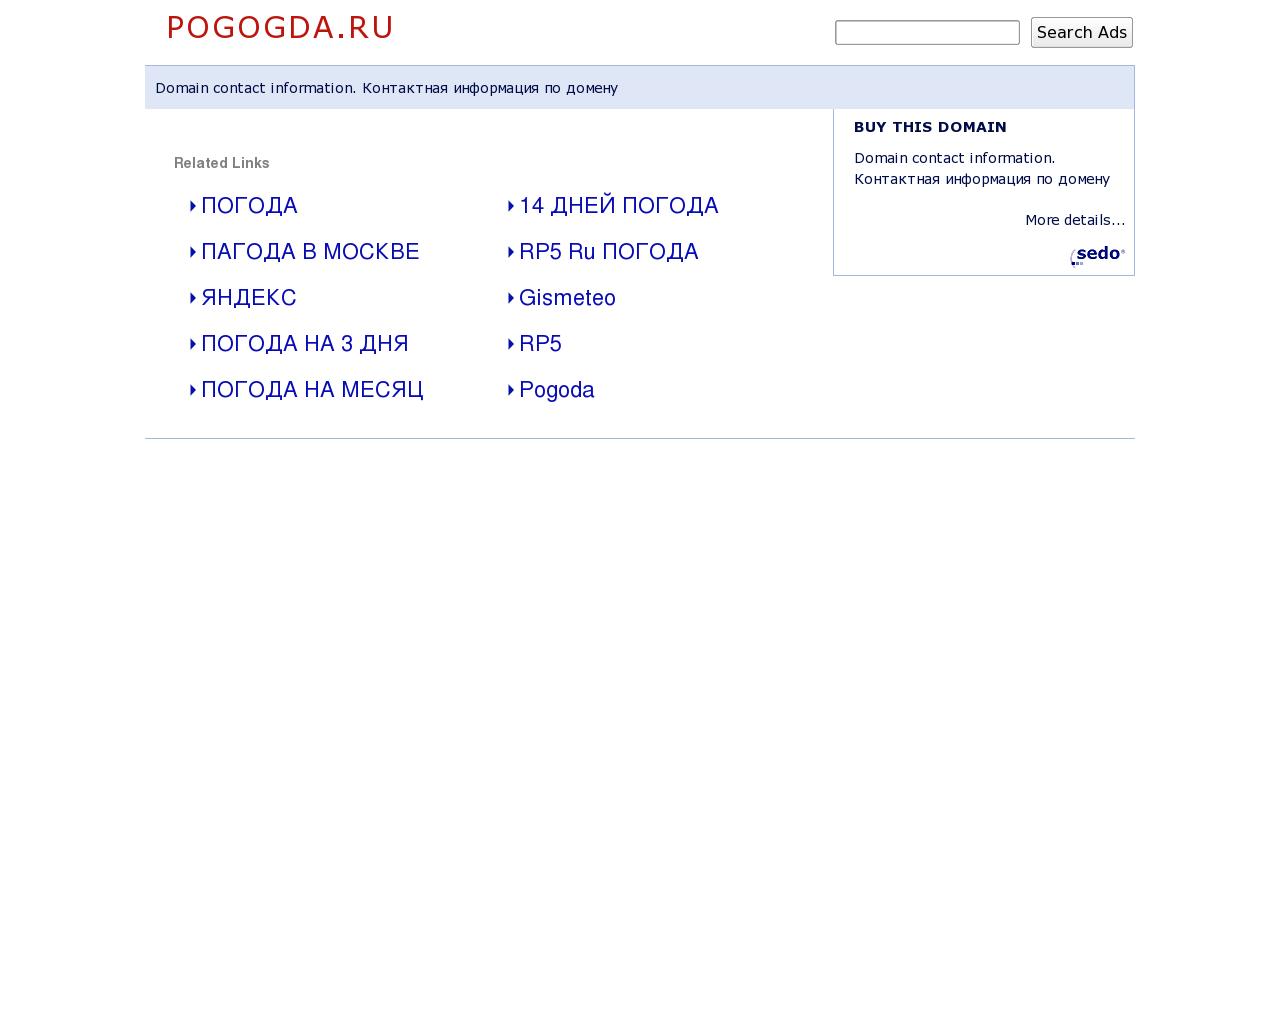 Изображение сайта pogogda.ru в разрешении 1280x1024